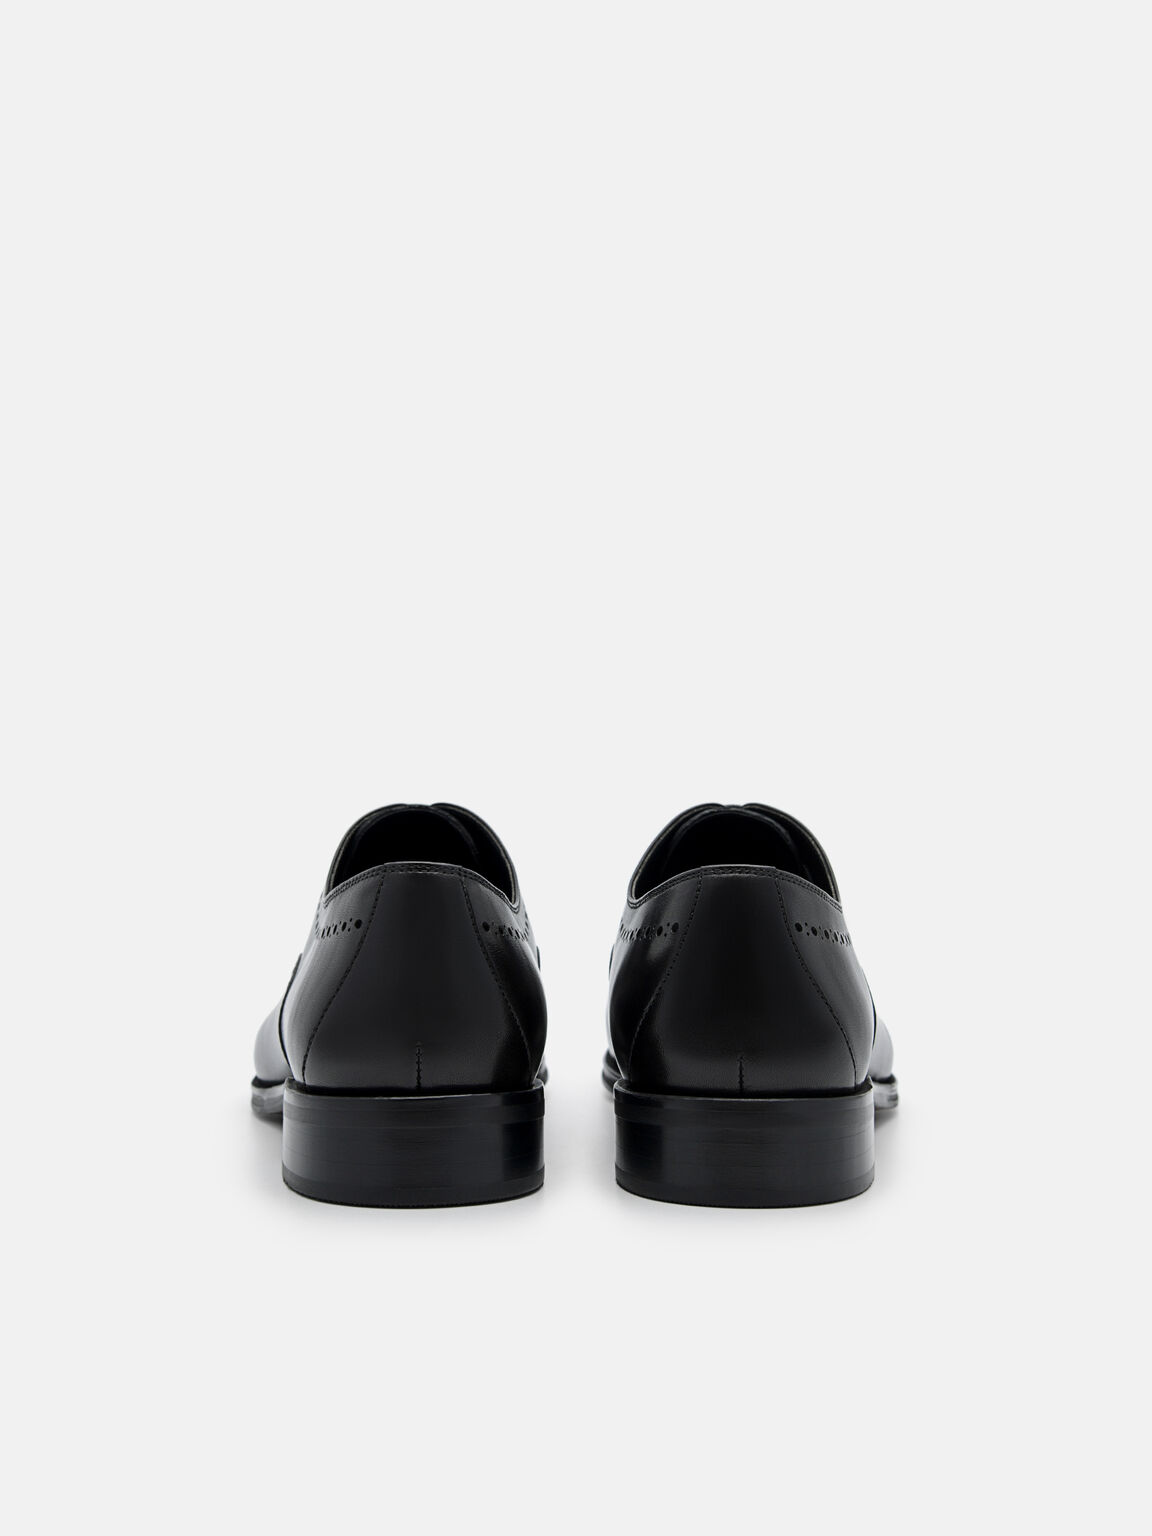 皮革布洛克牛津鞋, 黑色